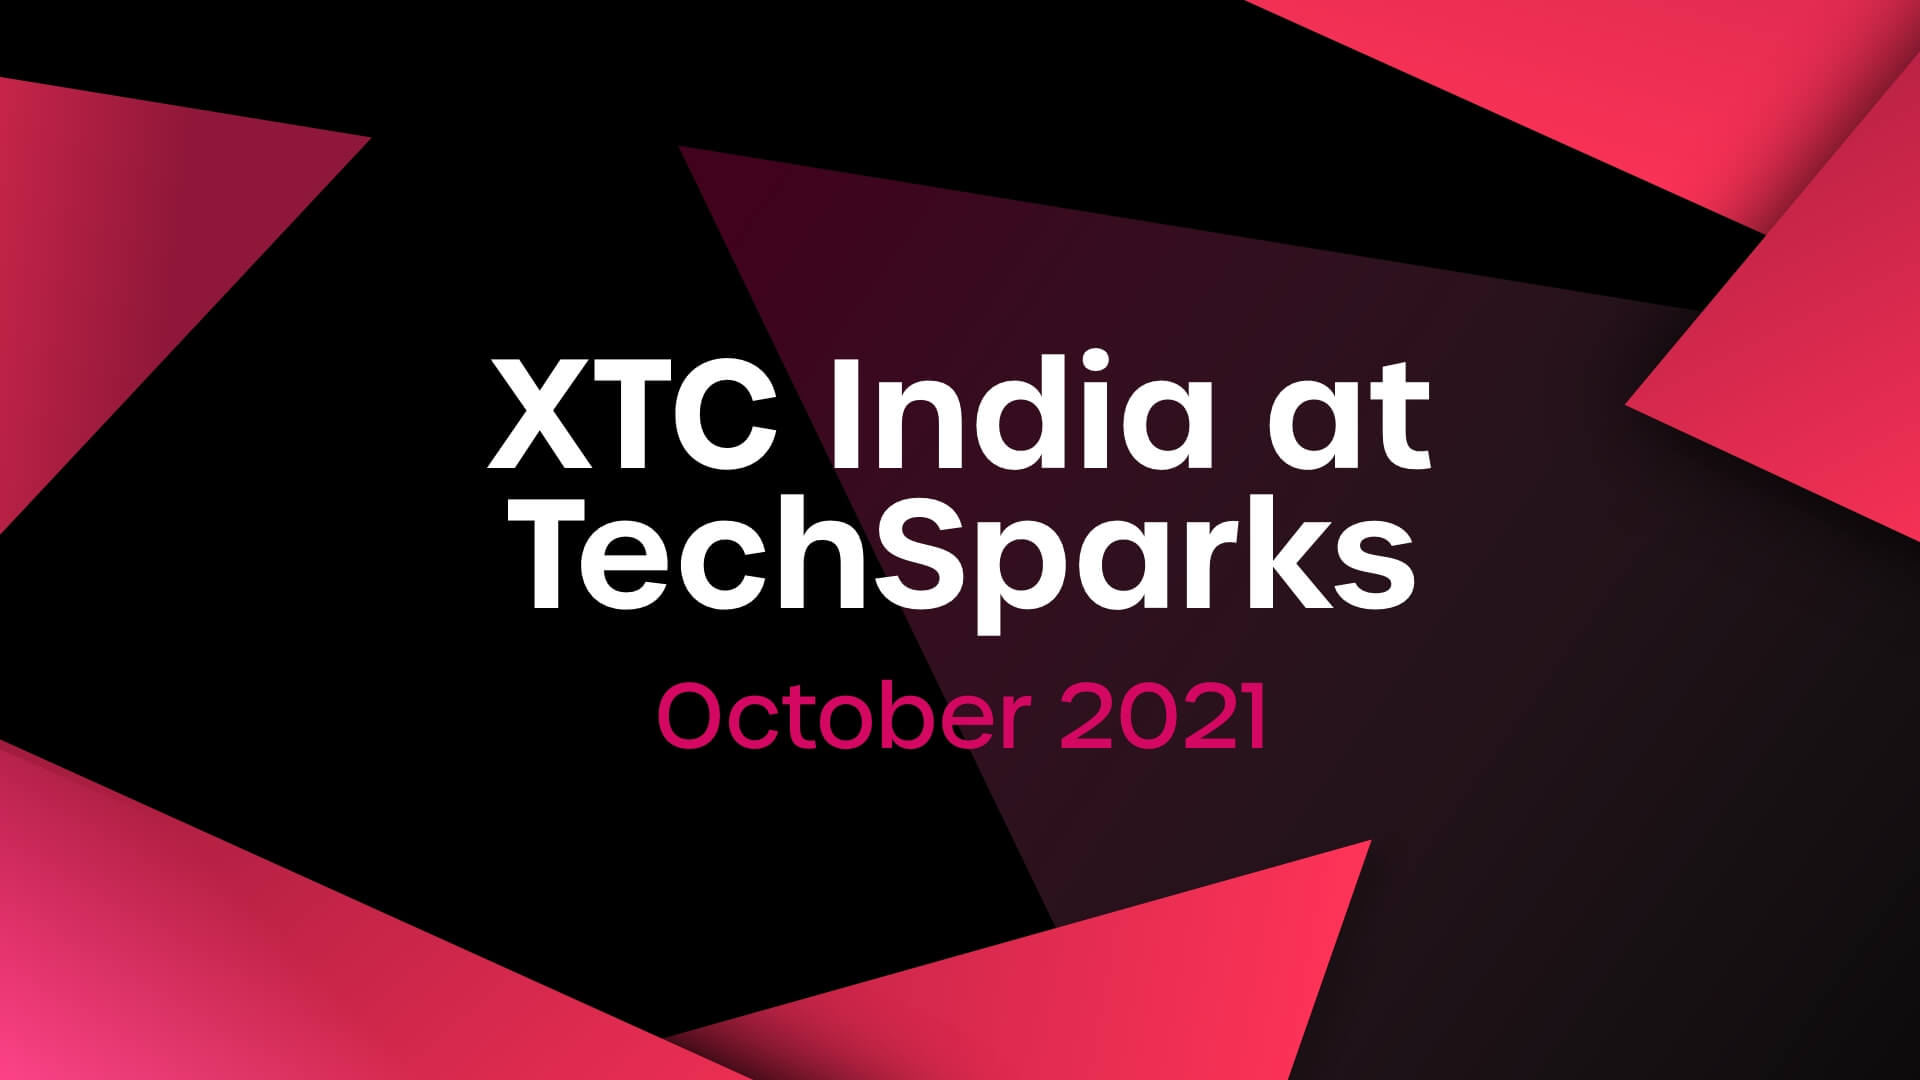 XTC India at TechSparks